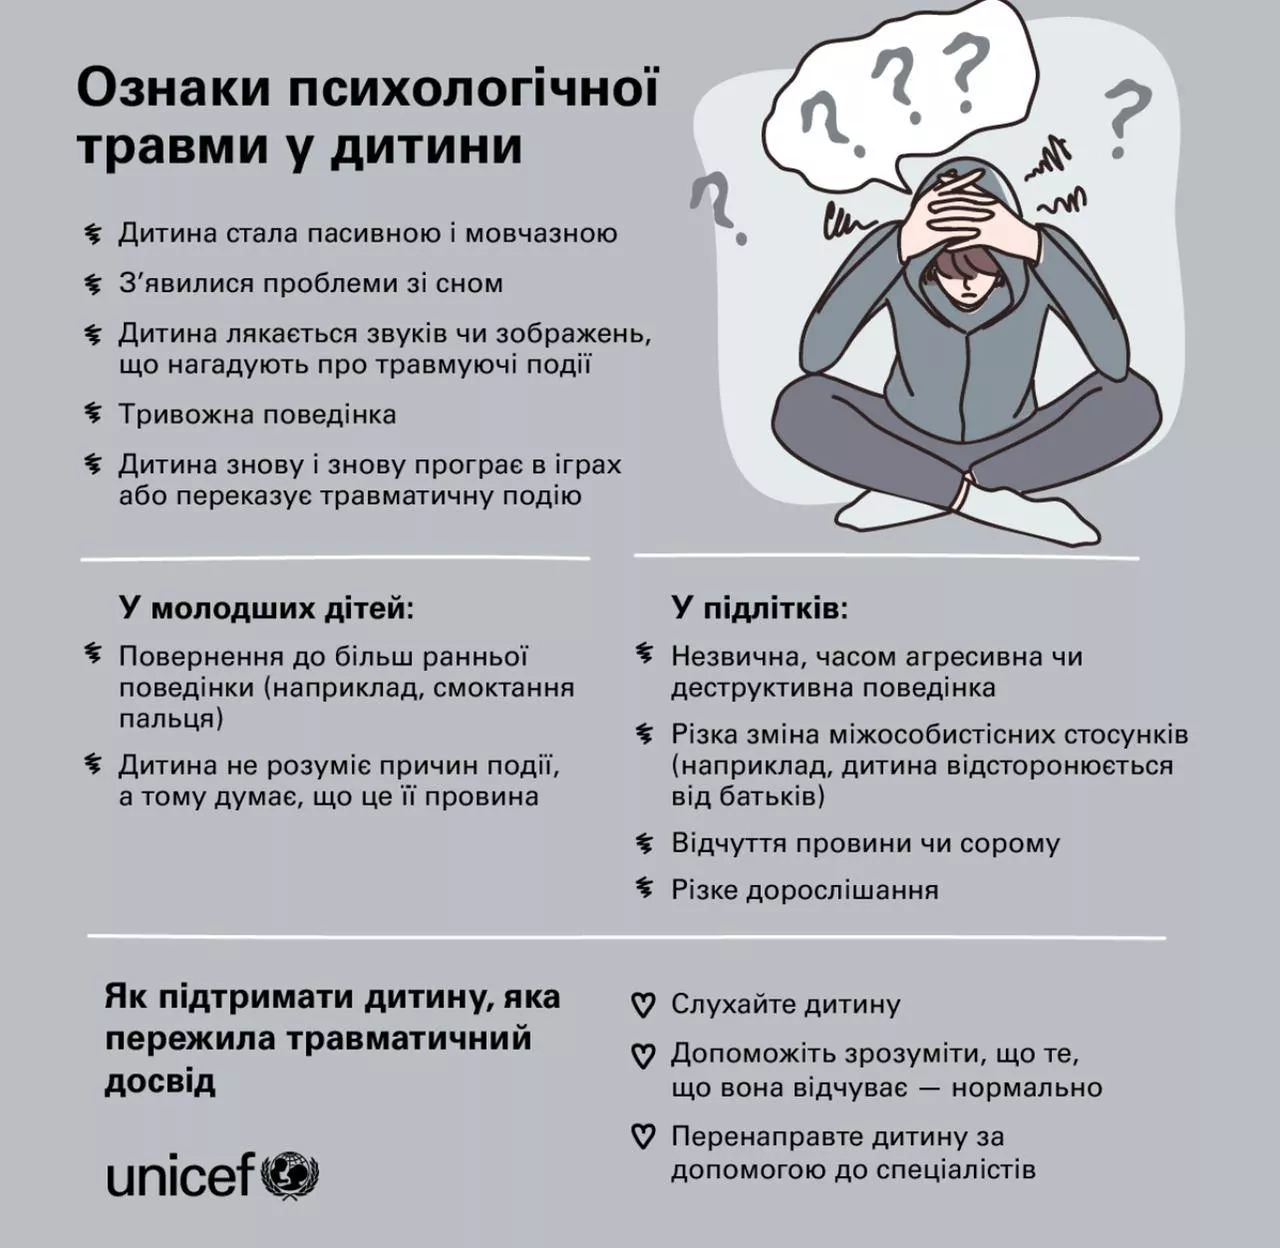 UNICEF выпустили инфографику о психологических травмах у детей и подростков